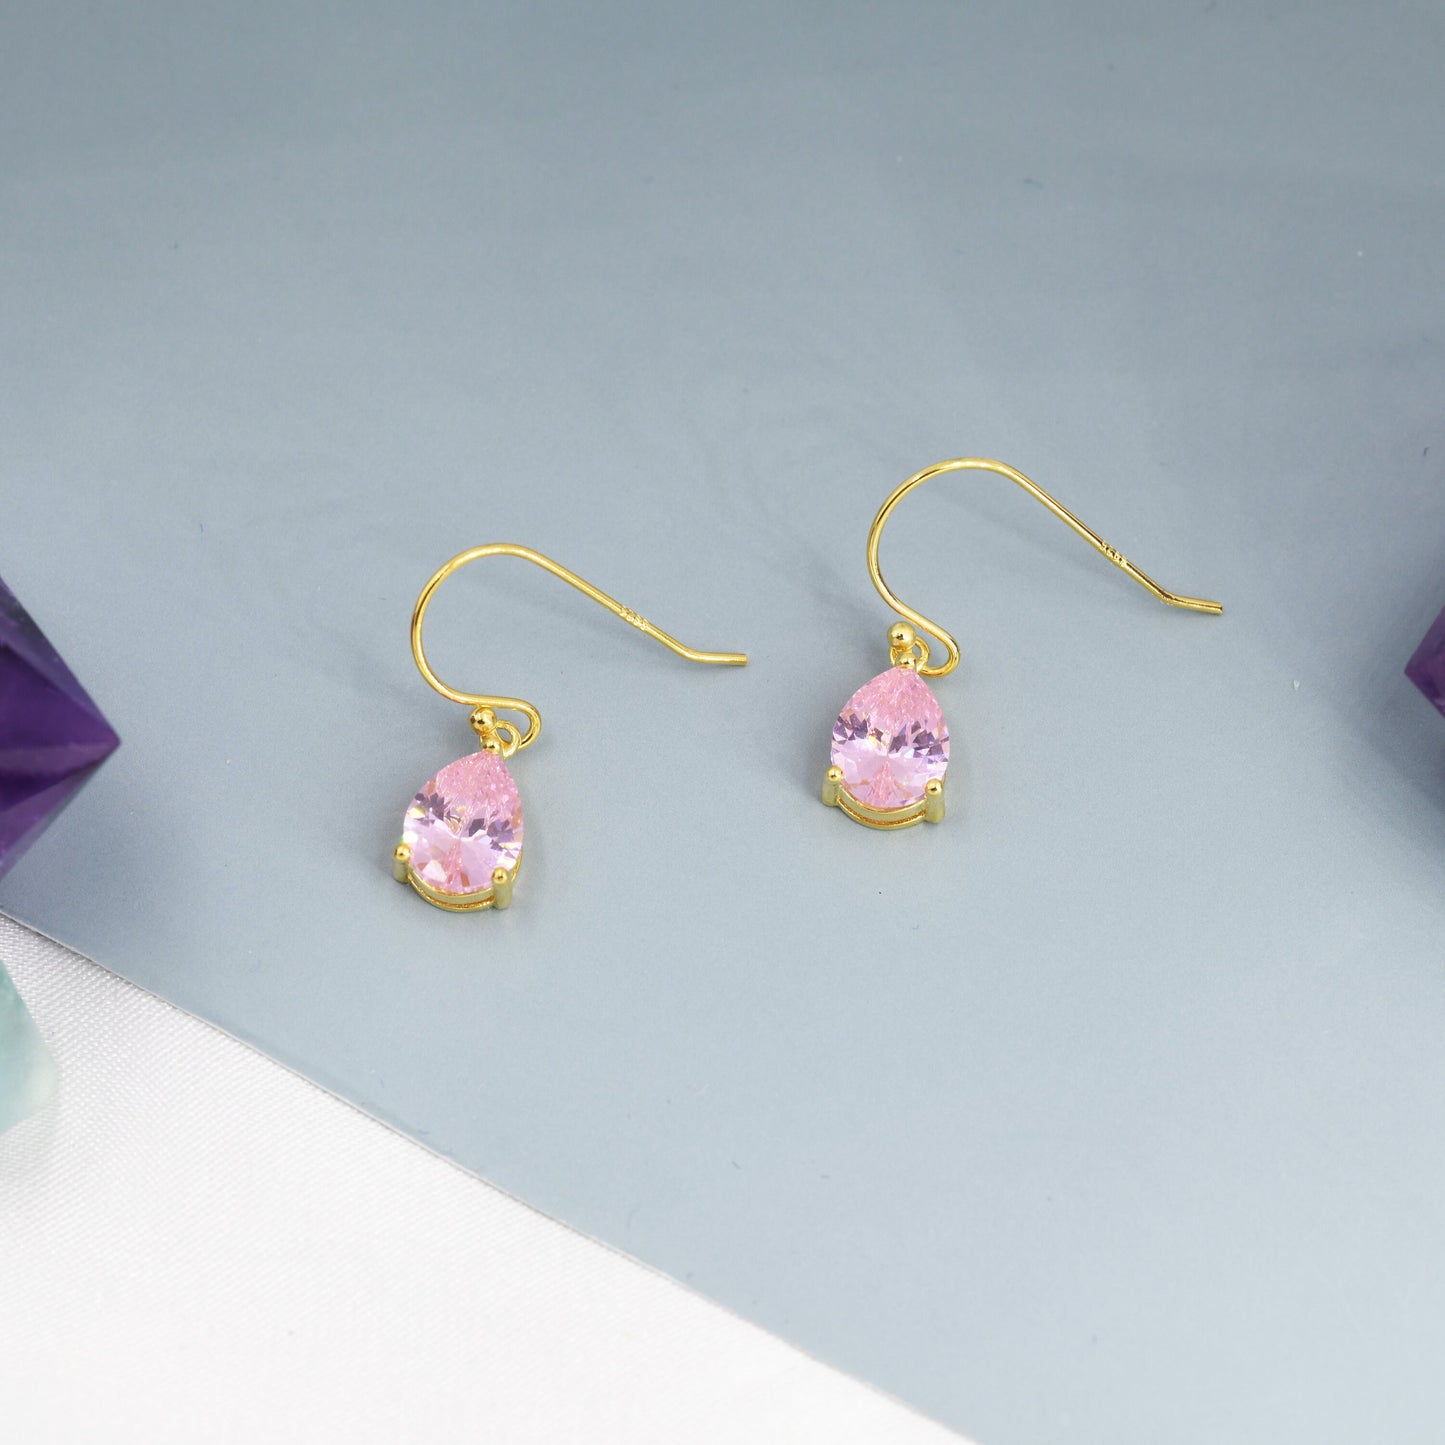 Tourmaline Pink Pear Cut CZ Drop Earrings in Sterling Silver, Silver or Gold, Pink Droplet Dangle Earrings